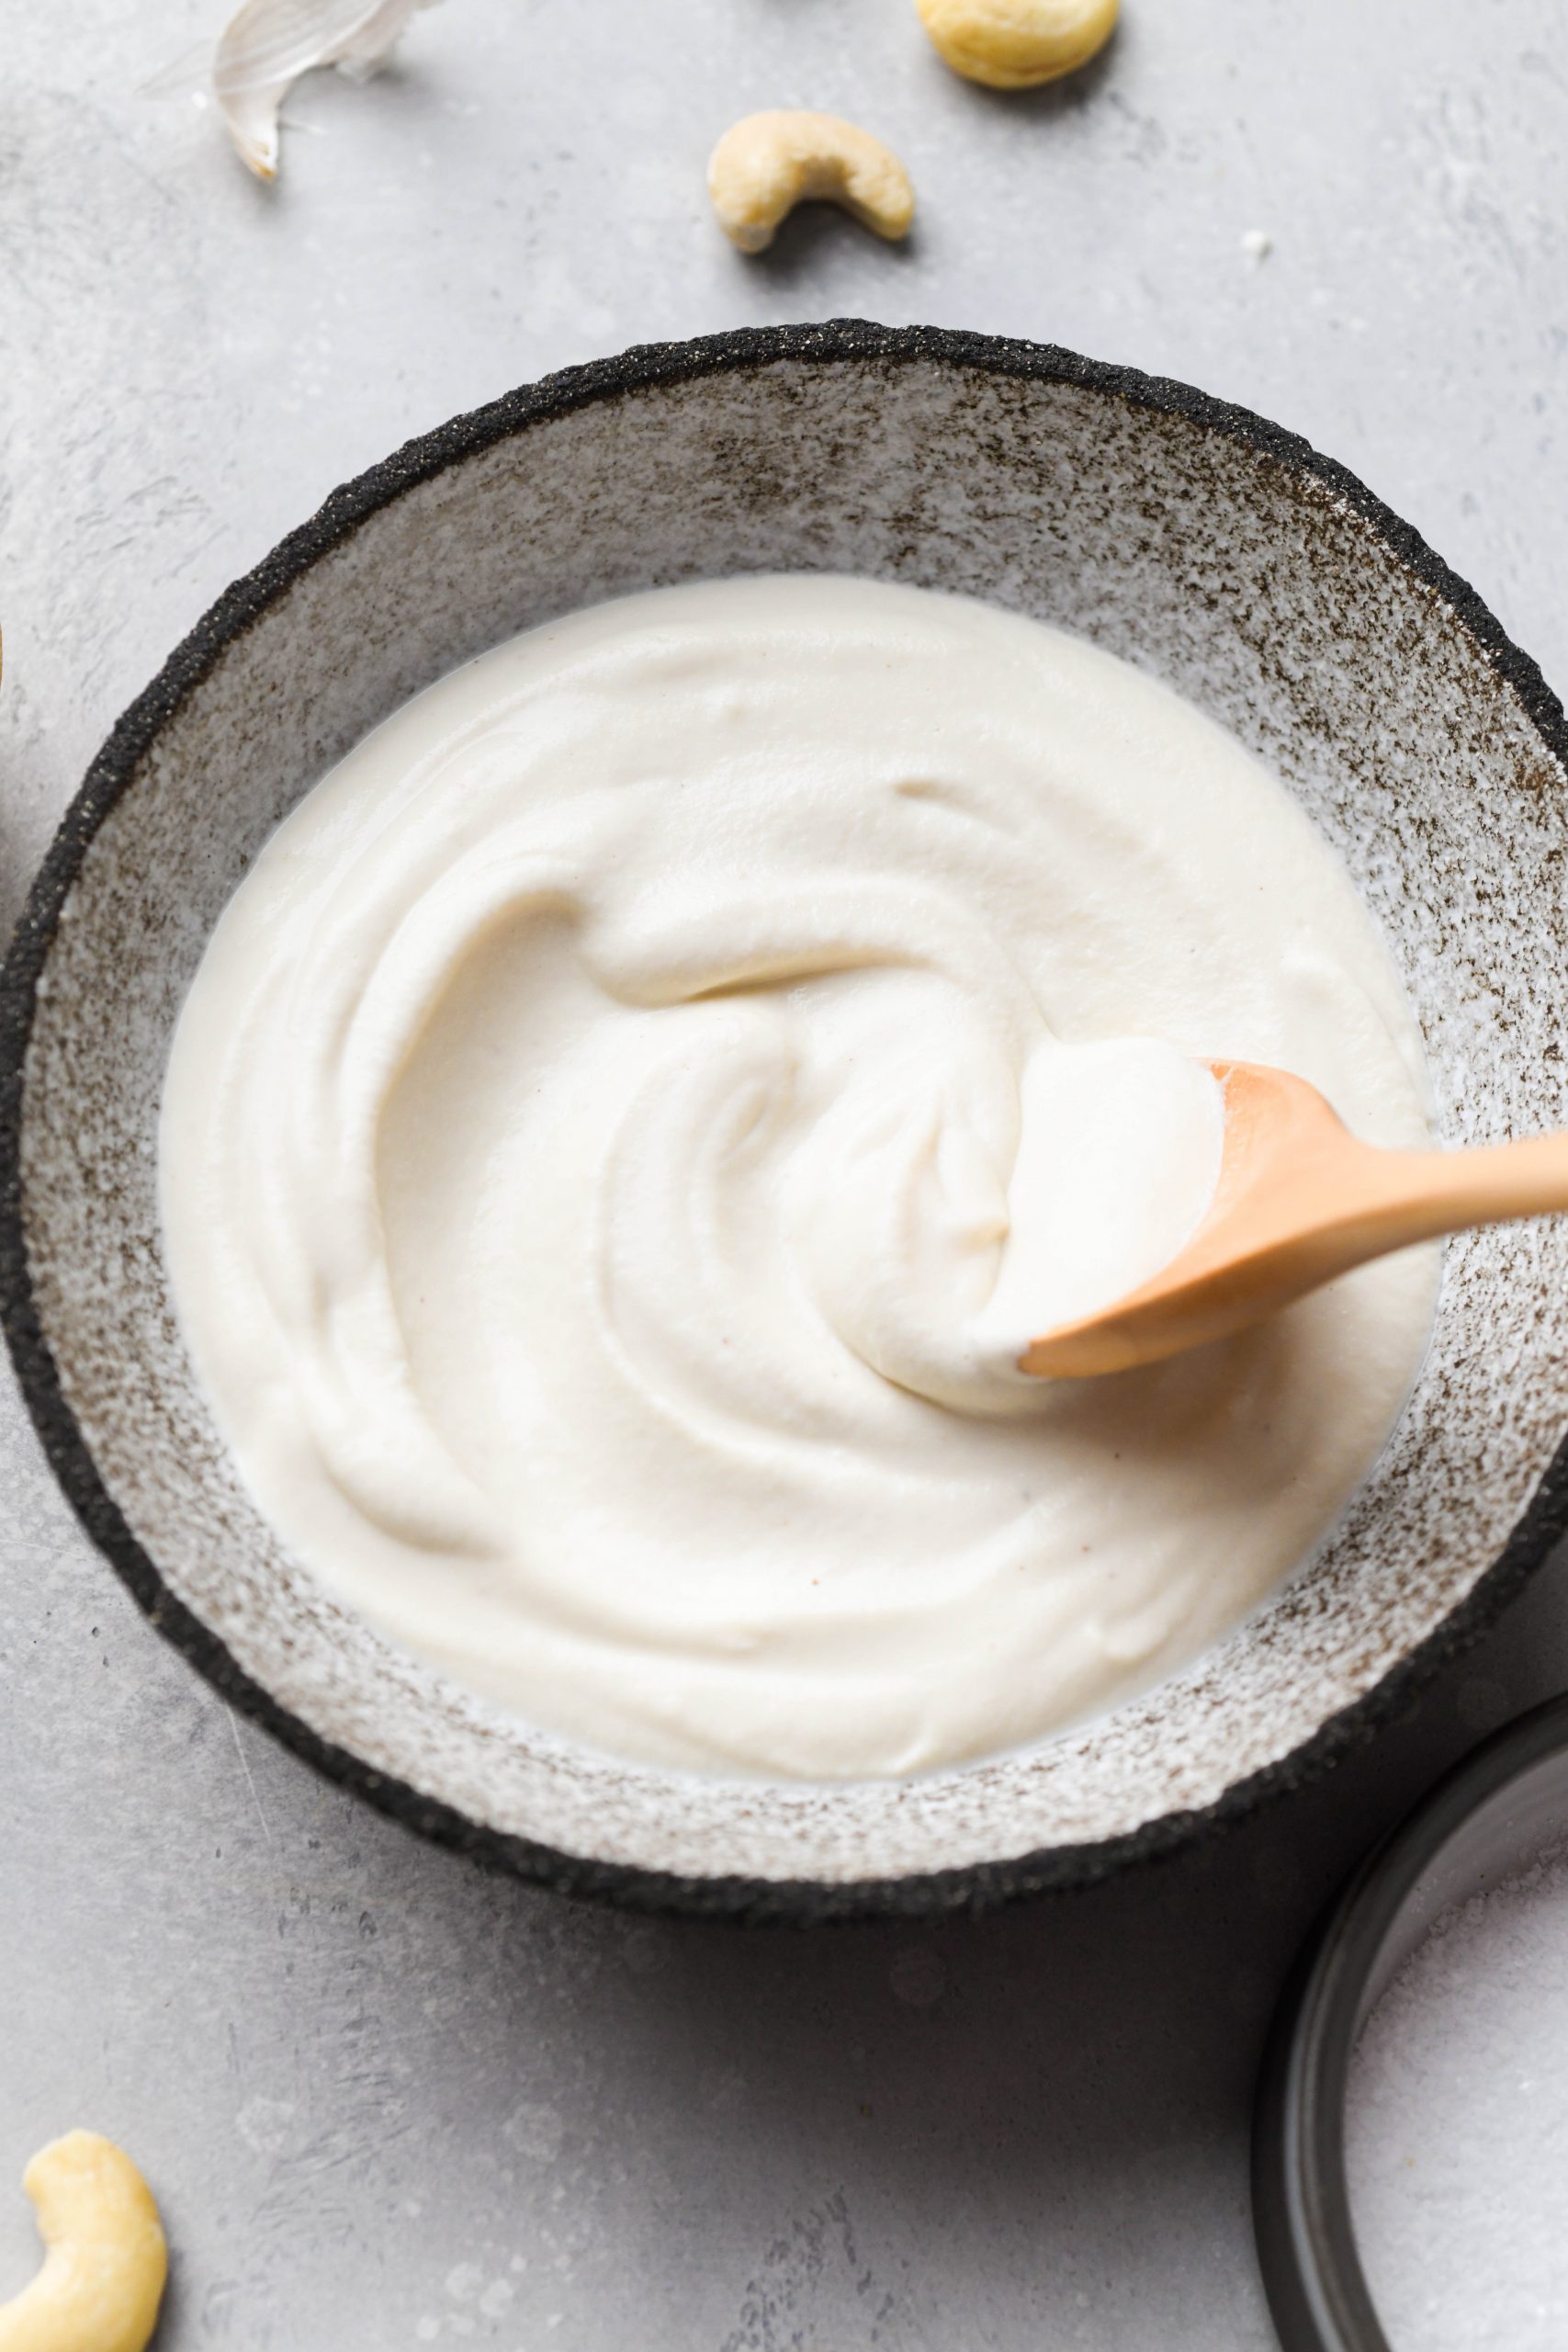 Vegan Sour Cream Recipe {gluten free + paleo + whole30} - Quick & Easy!